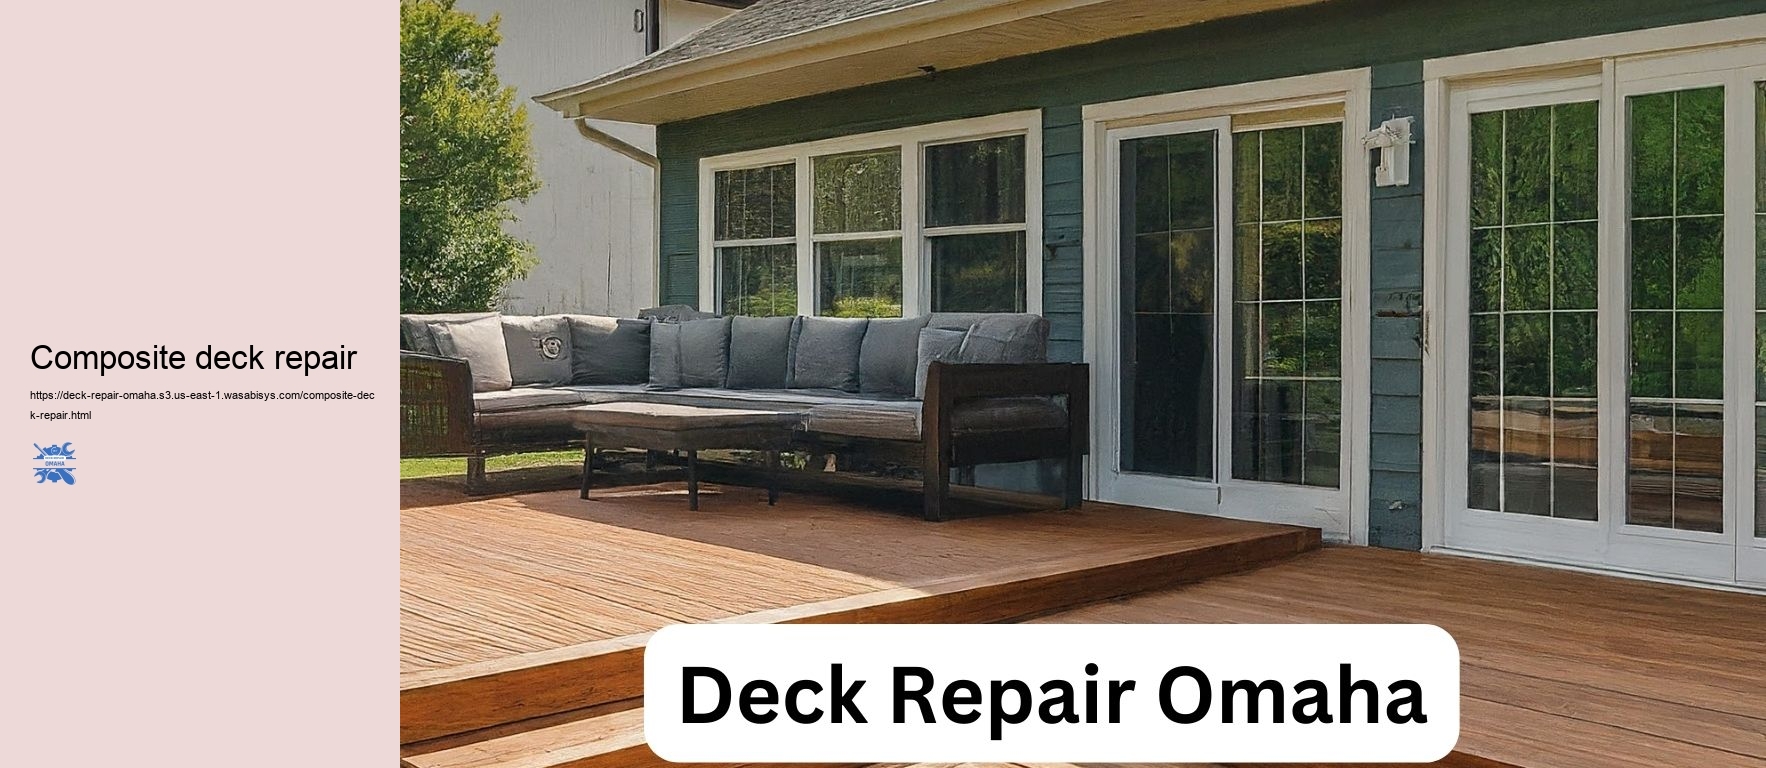 Composite deck repair